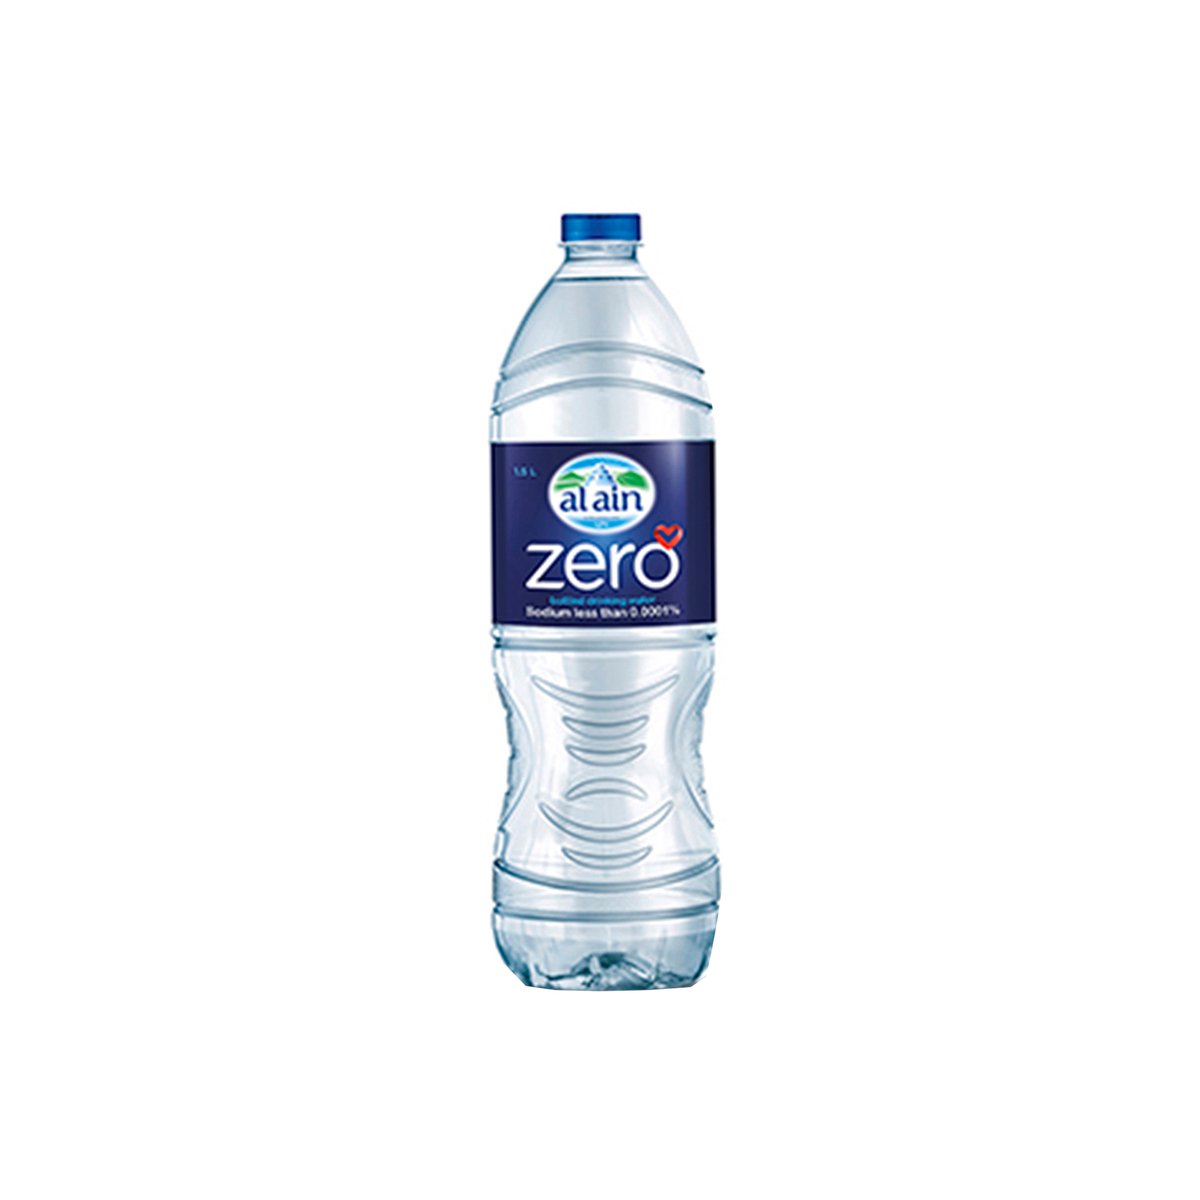 العين زيرو مياه شرب معبأة خالية من الصوديوم 1.5 لتر